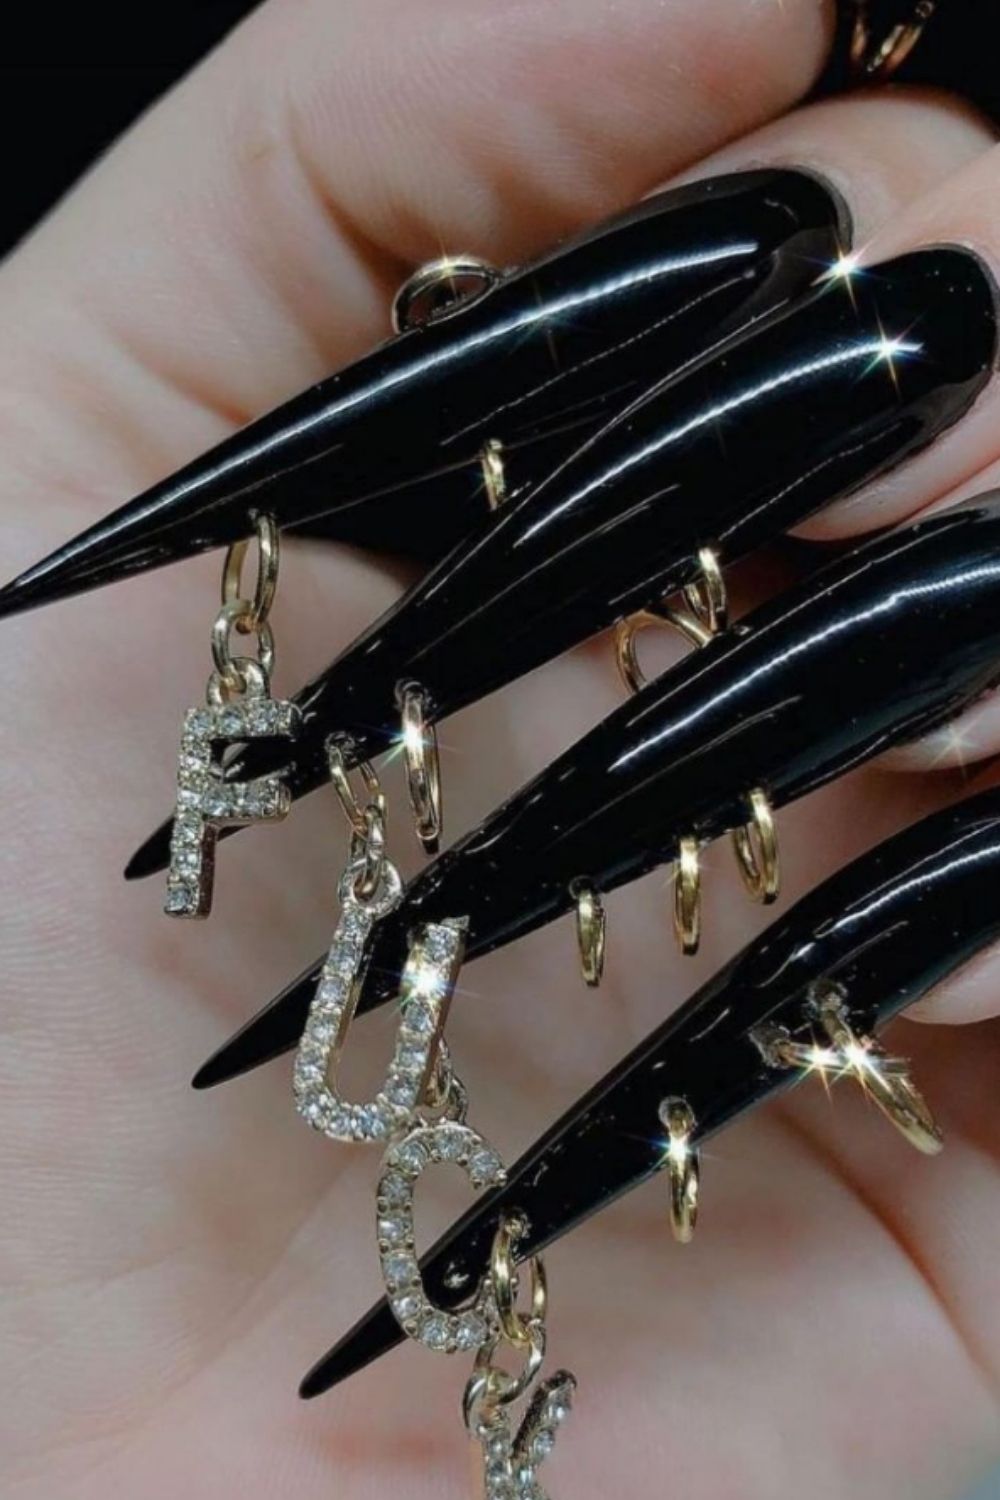 Black acrylic nails | the fall season nails color 2021